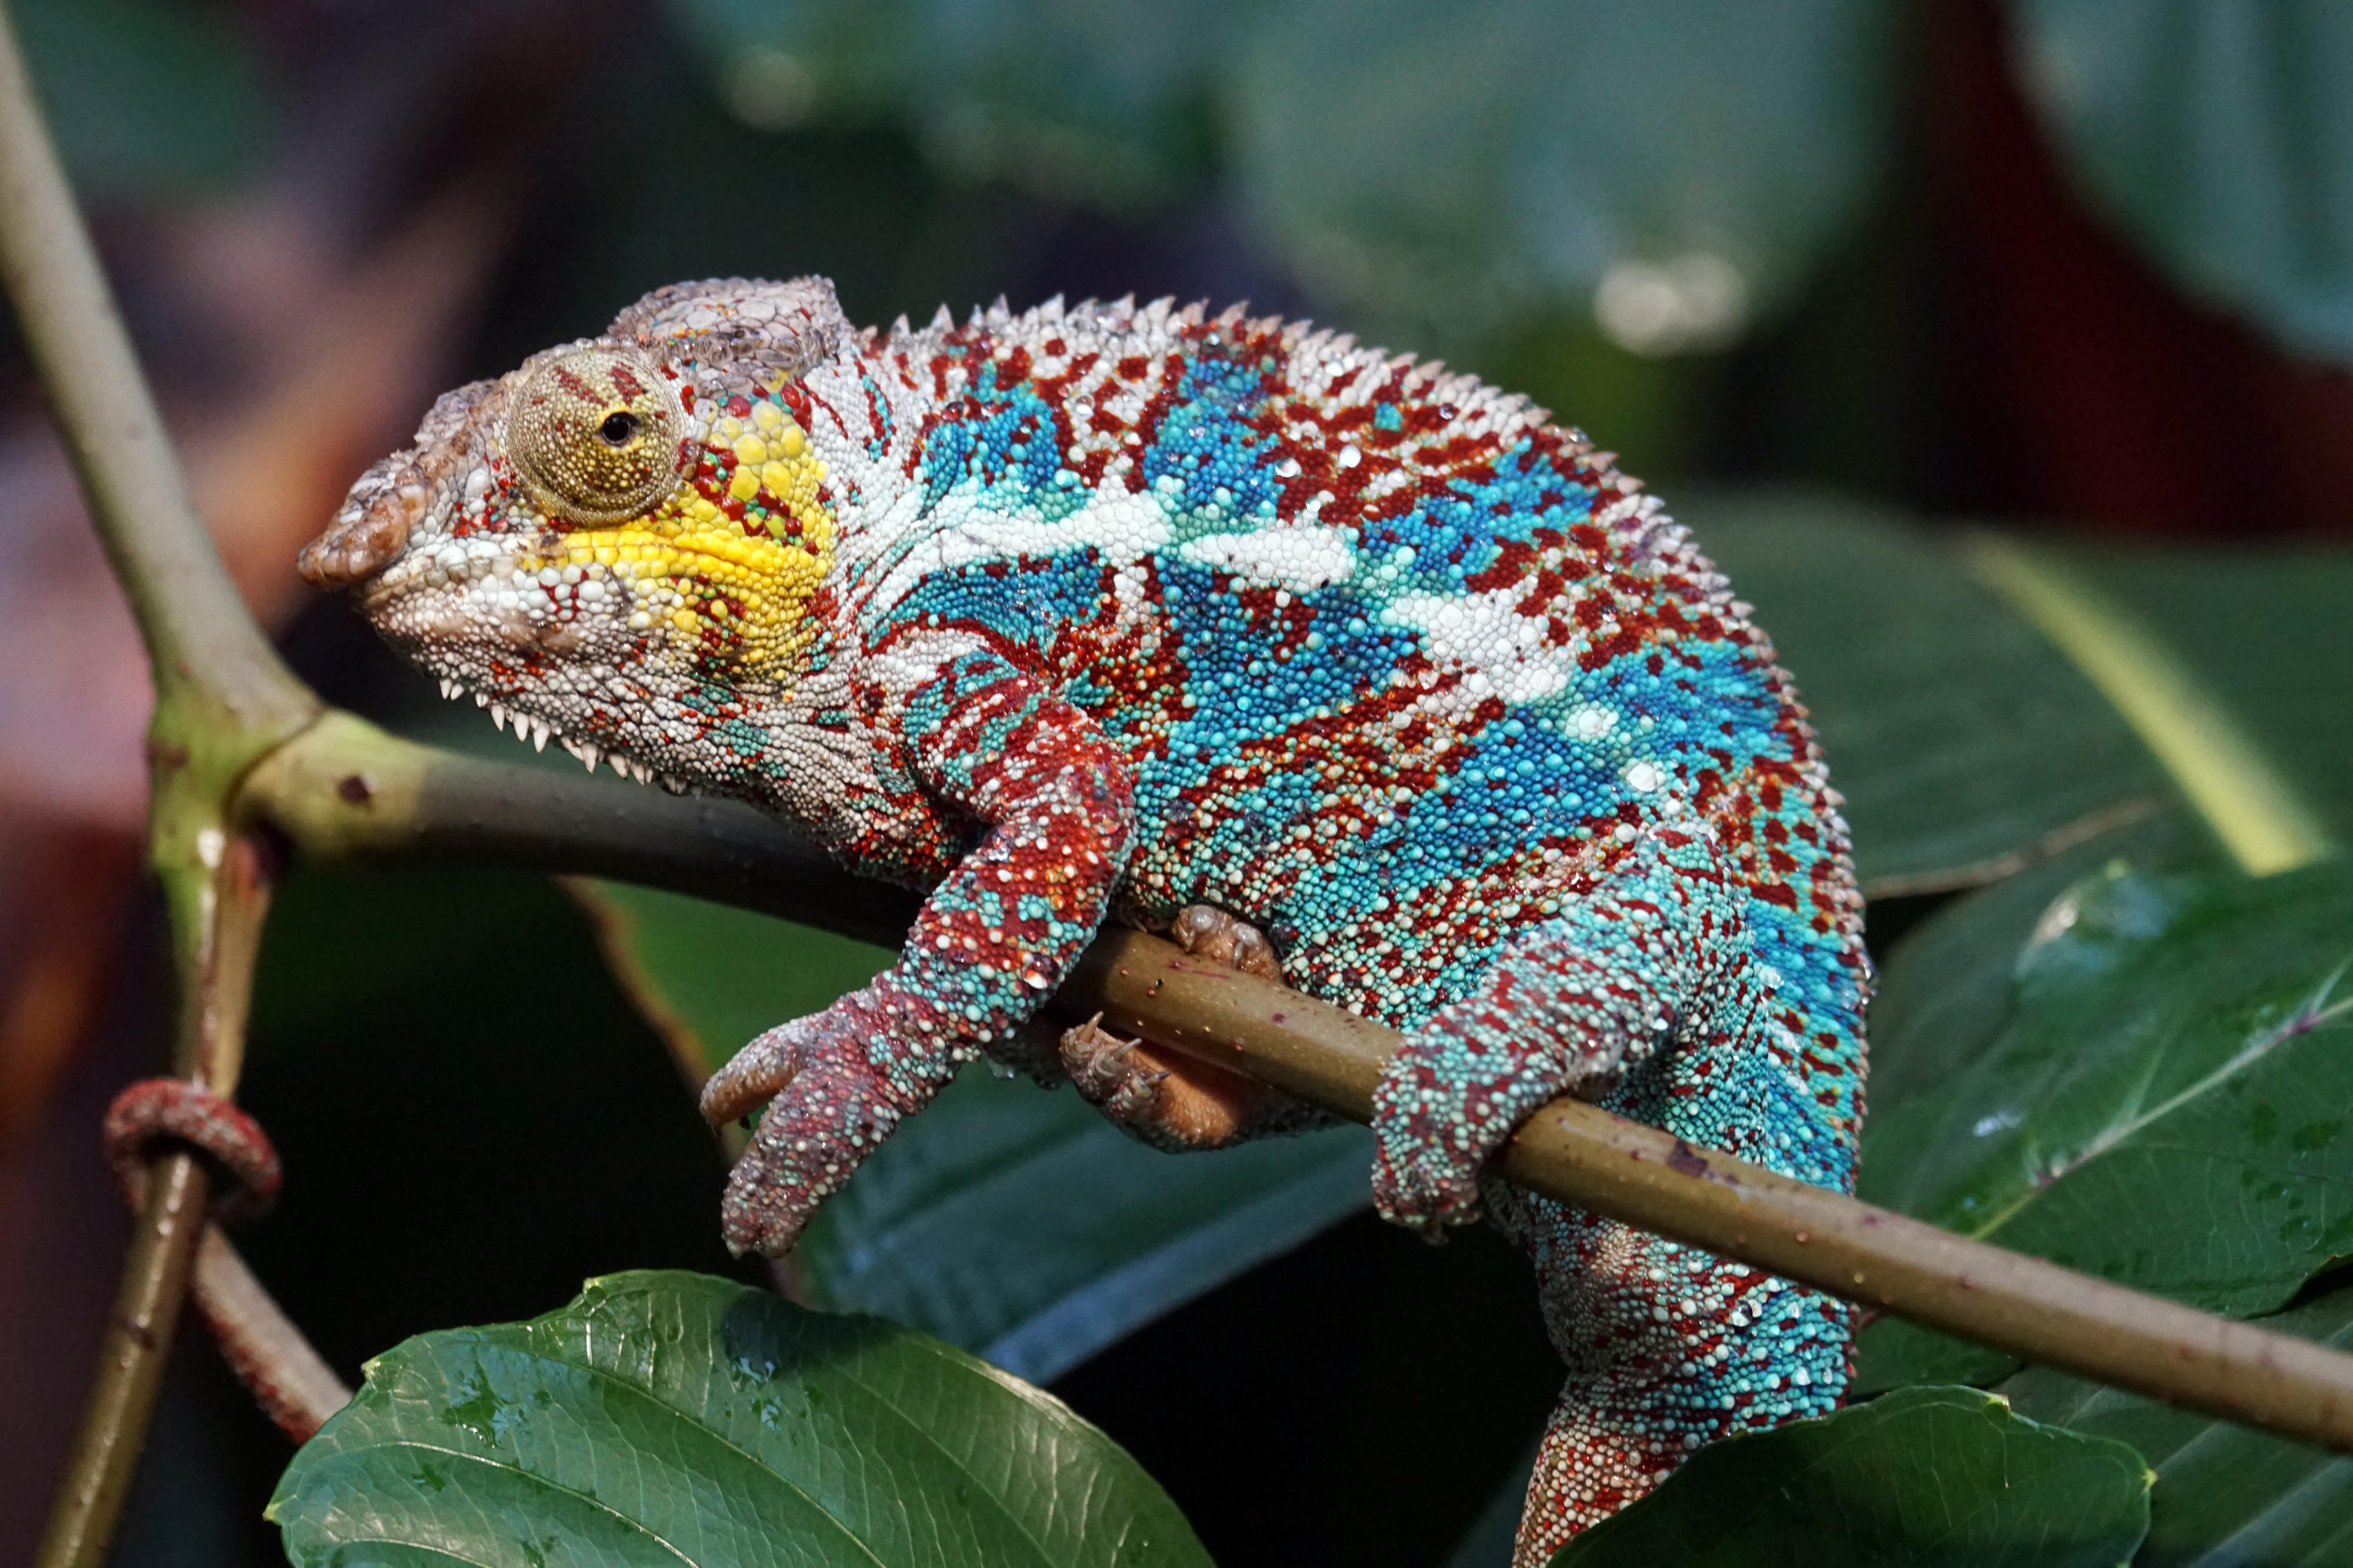 Chameleon in Madagascar